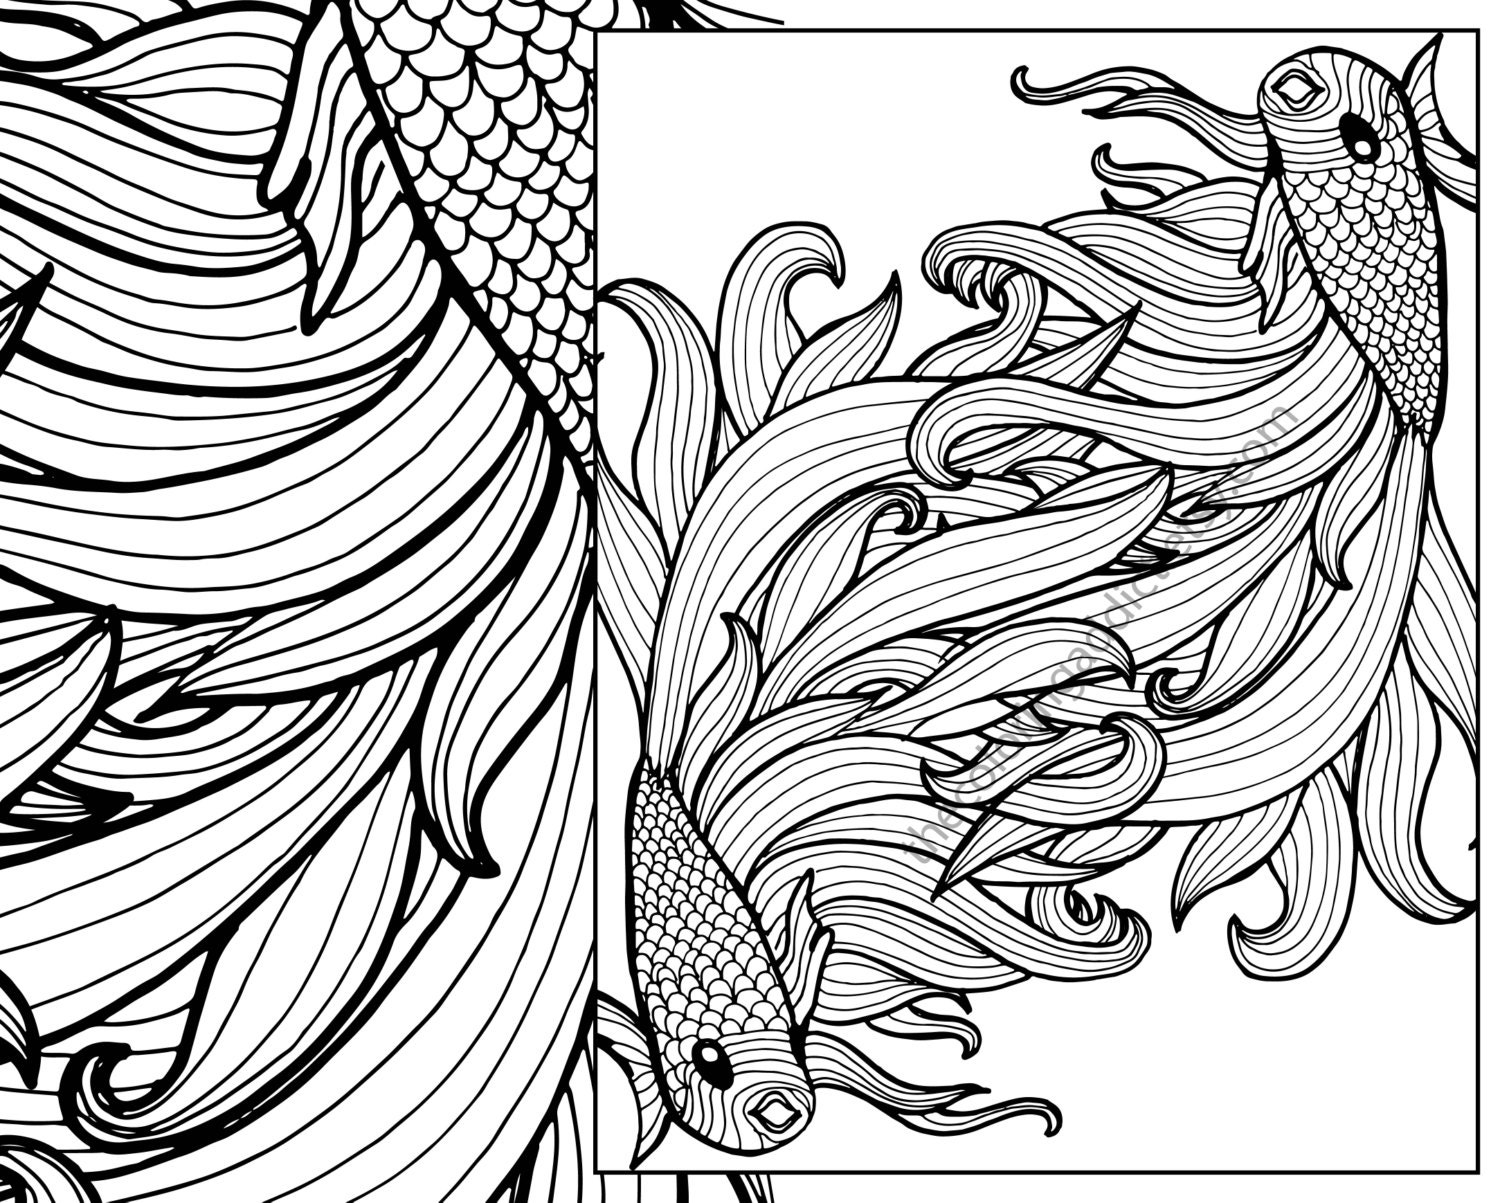 beta fish coloring sheet animal coloring pdf zentangle